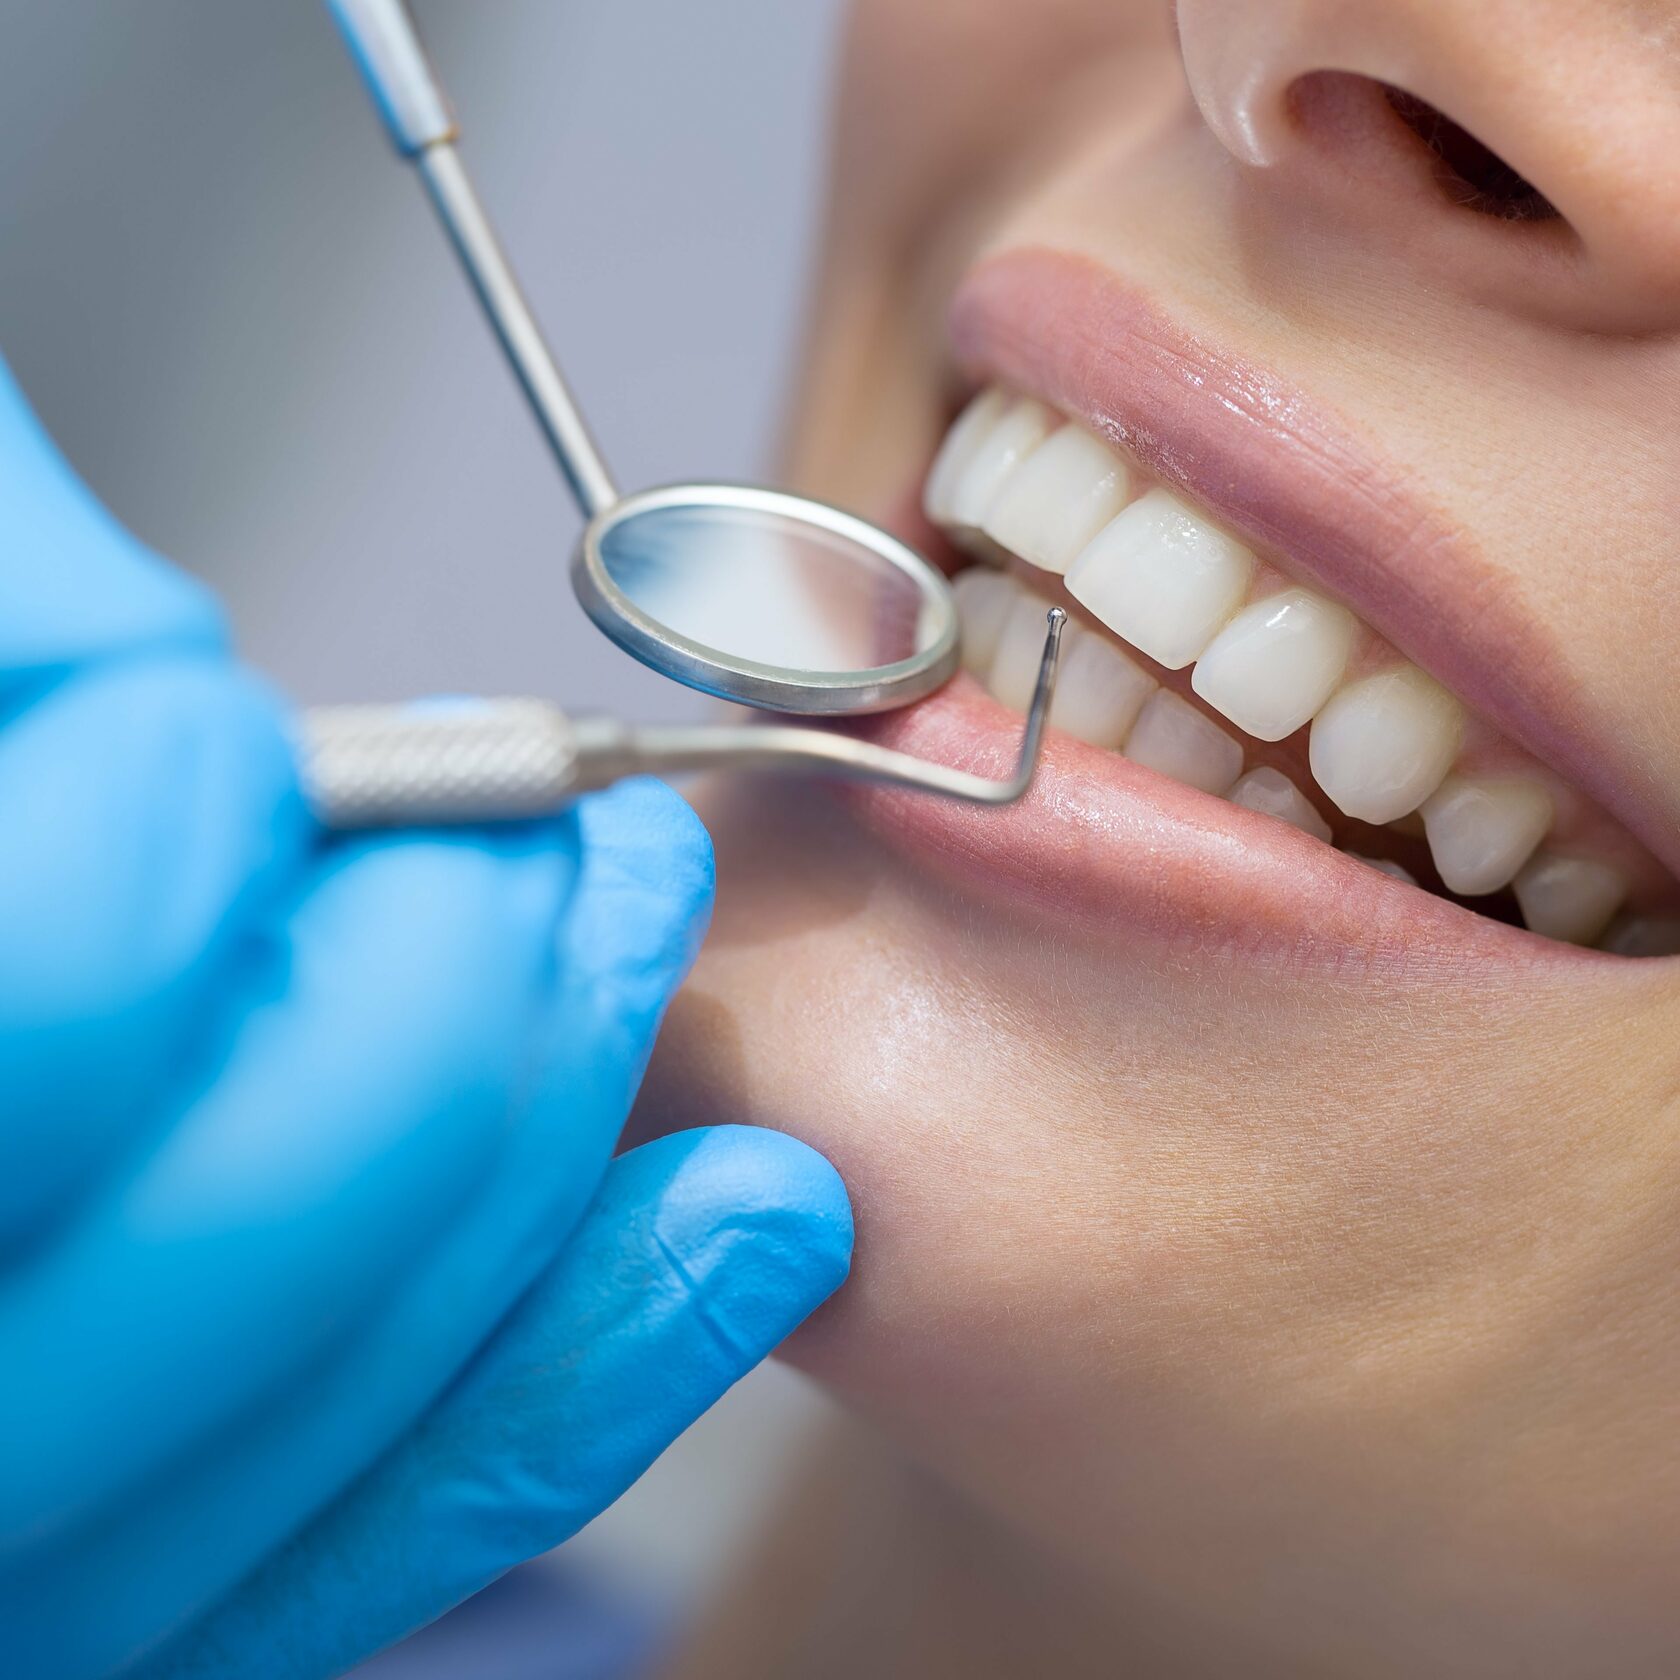 Профессиональная чистка зубов у стоматолога. Профессиональная гигиена полости рта. Профессиональная гигиена полости рта в стоматологии. Красивые зубы стоматология. Сайт стоматологии.